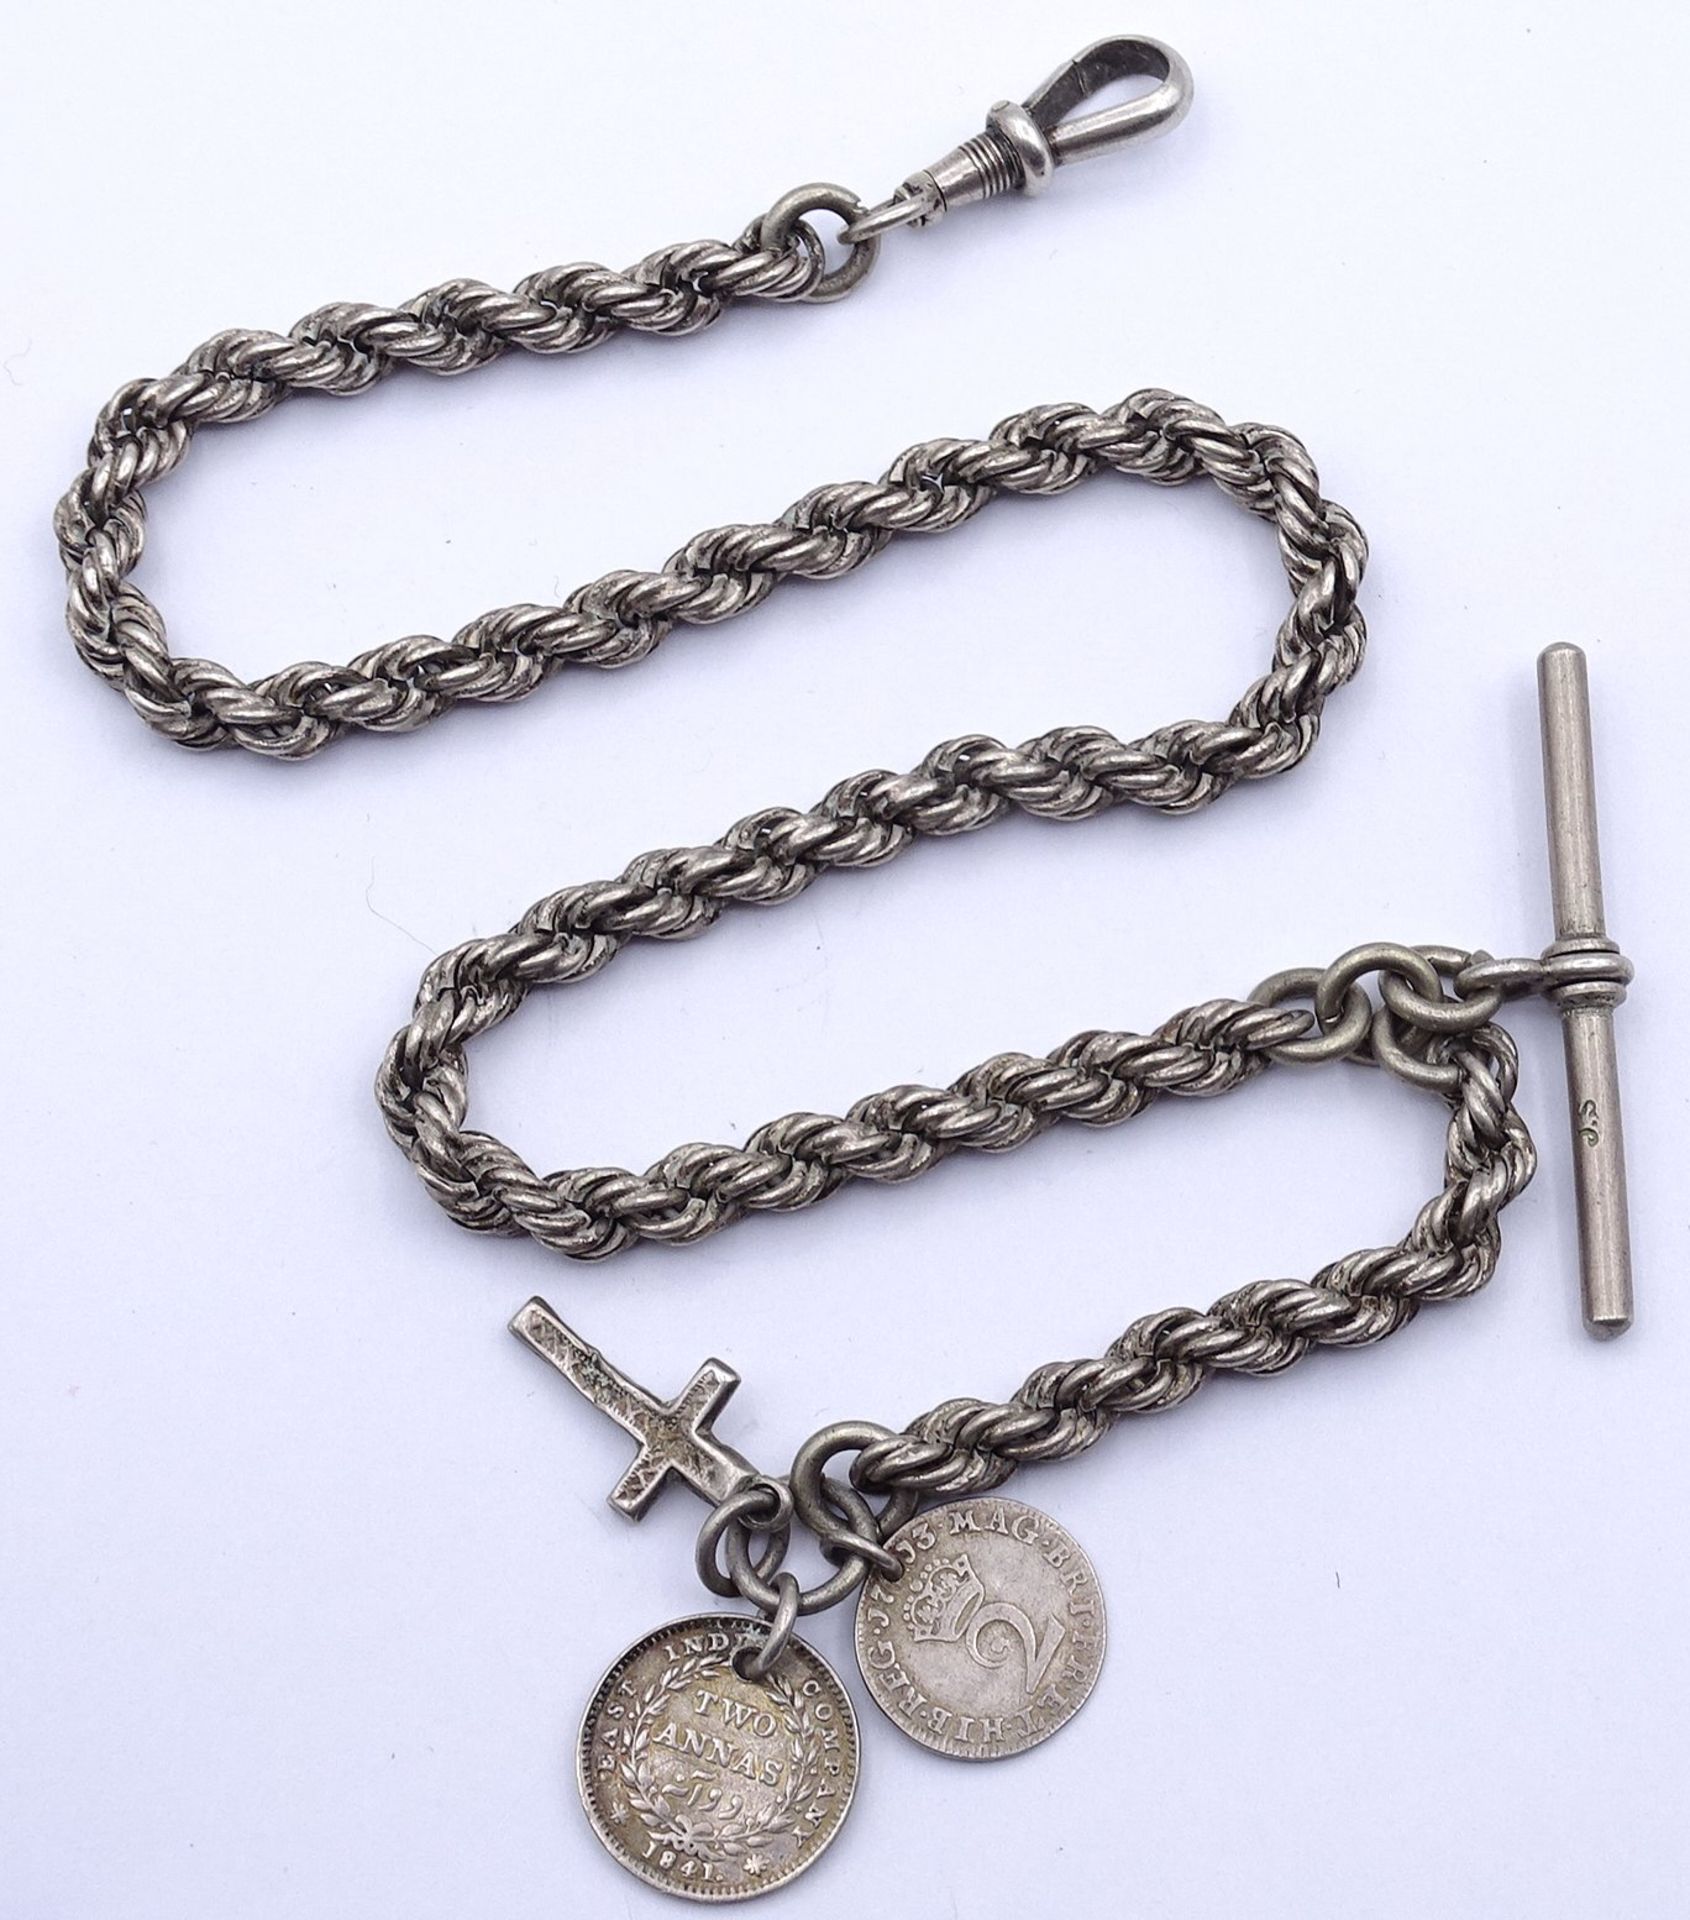 Uhrenkette, Silber, mit Kreuz und Münz Anhängern, L. 36cm, 38g.